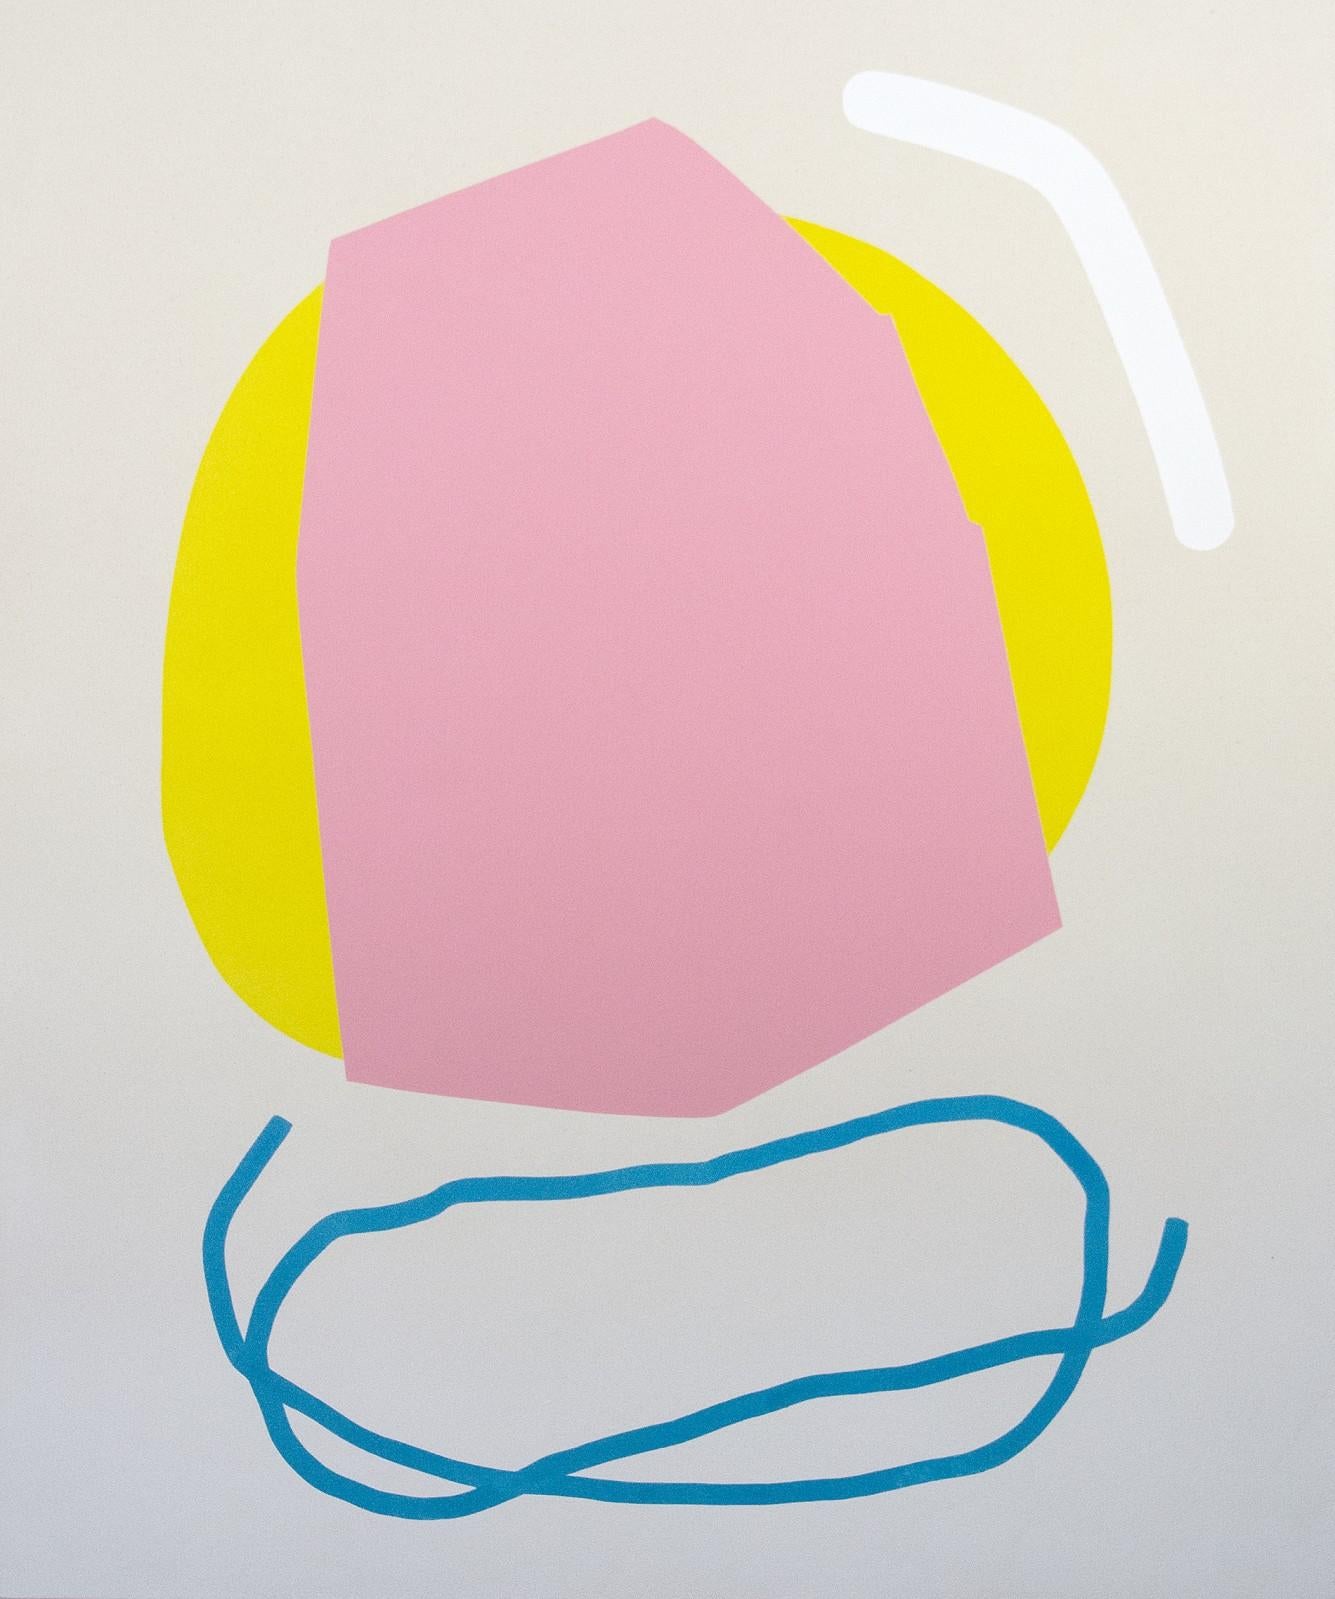 Abstract Painting Aron Hill - Rose contre-jaune et ligne bleue - formes abstraites colorées, acrylique sur toile